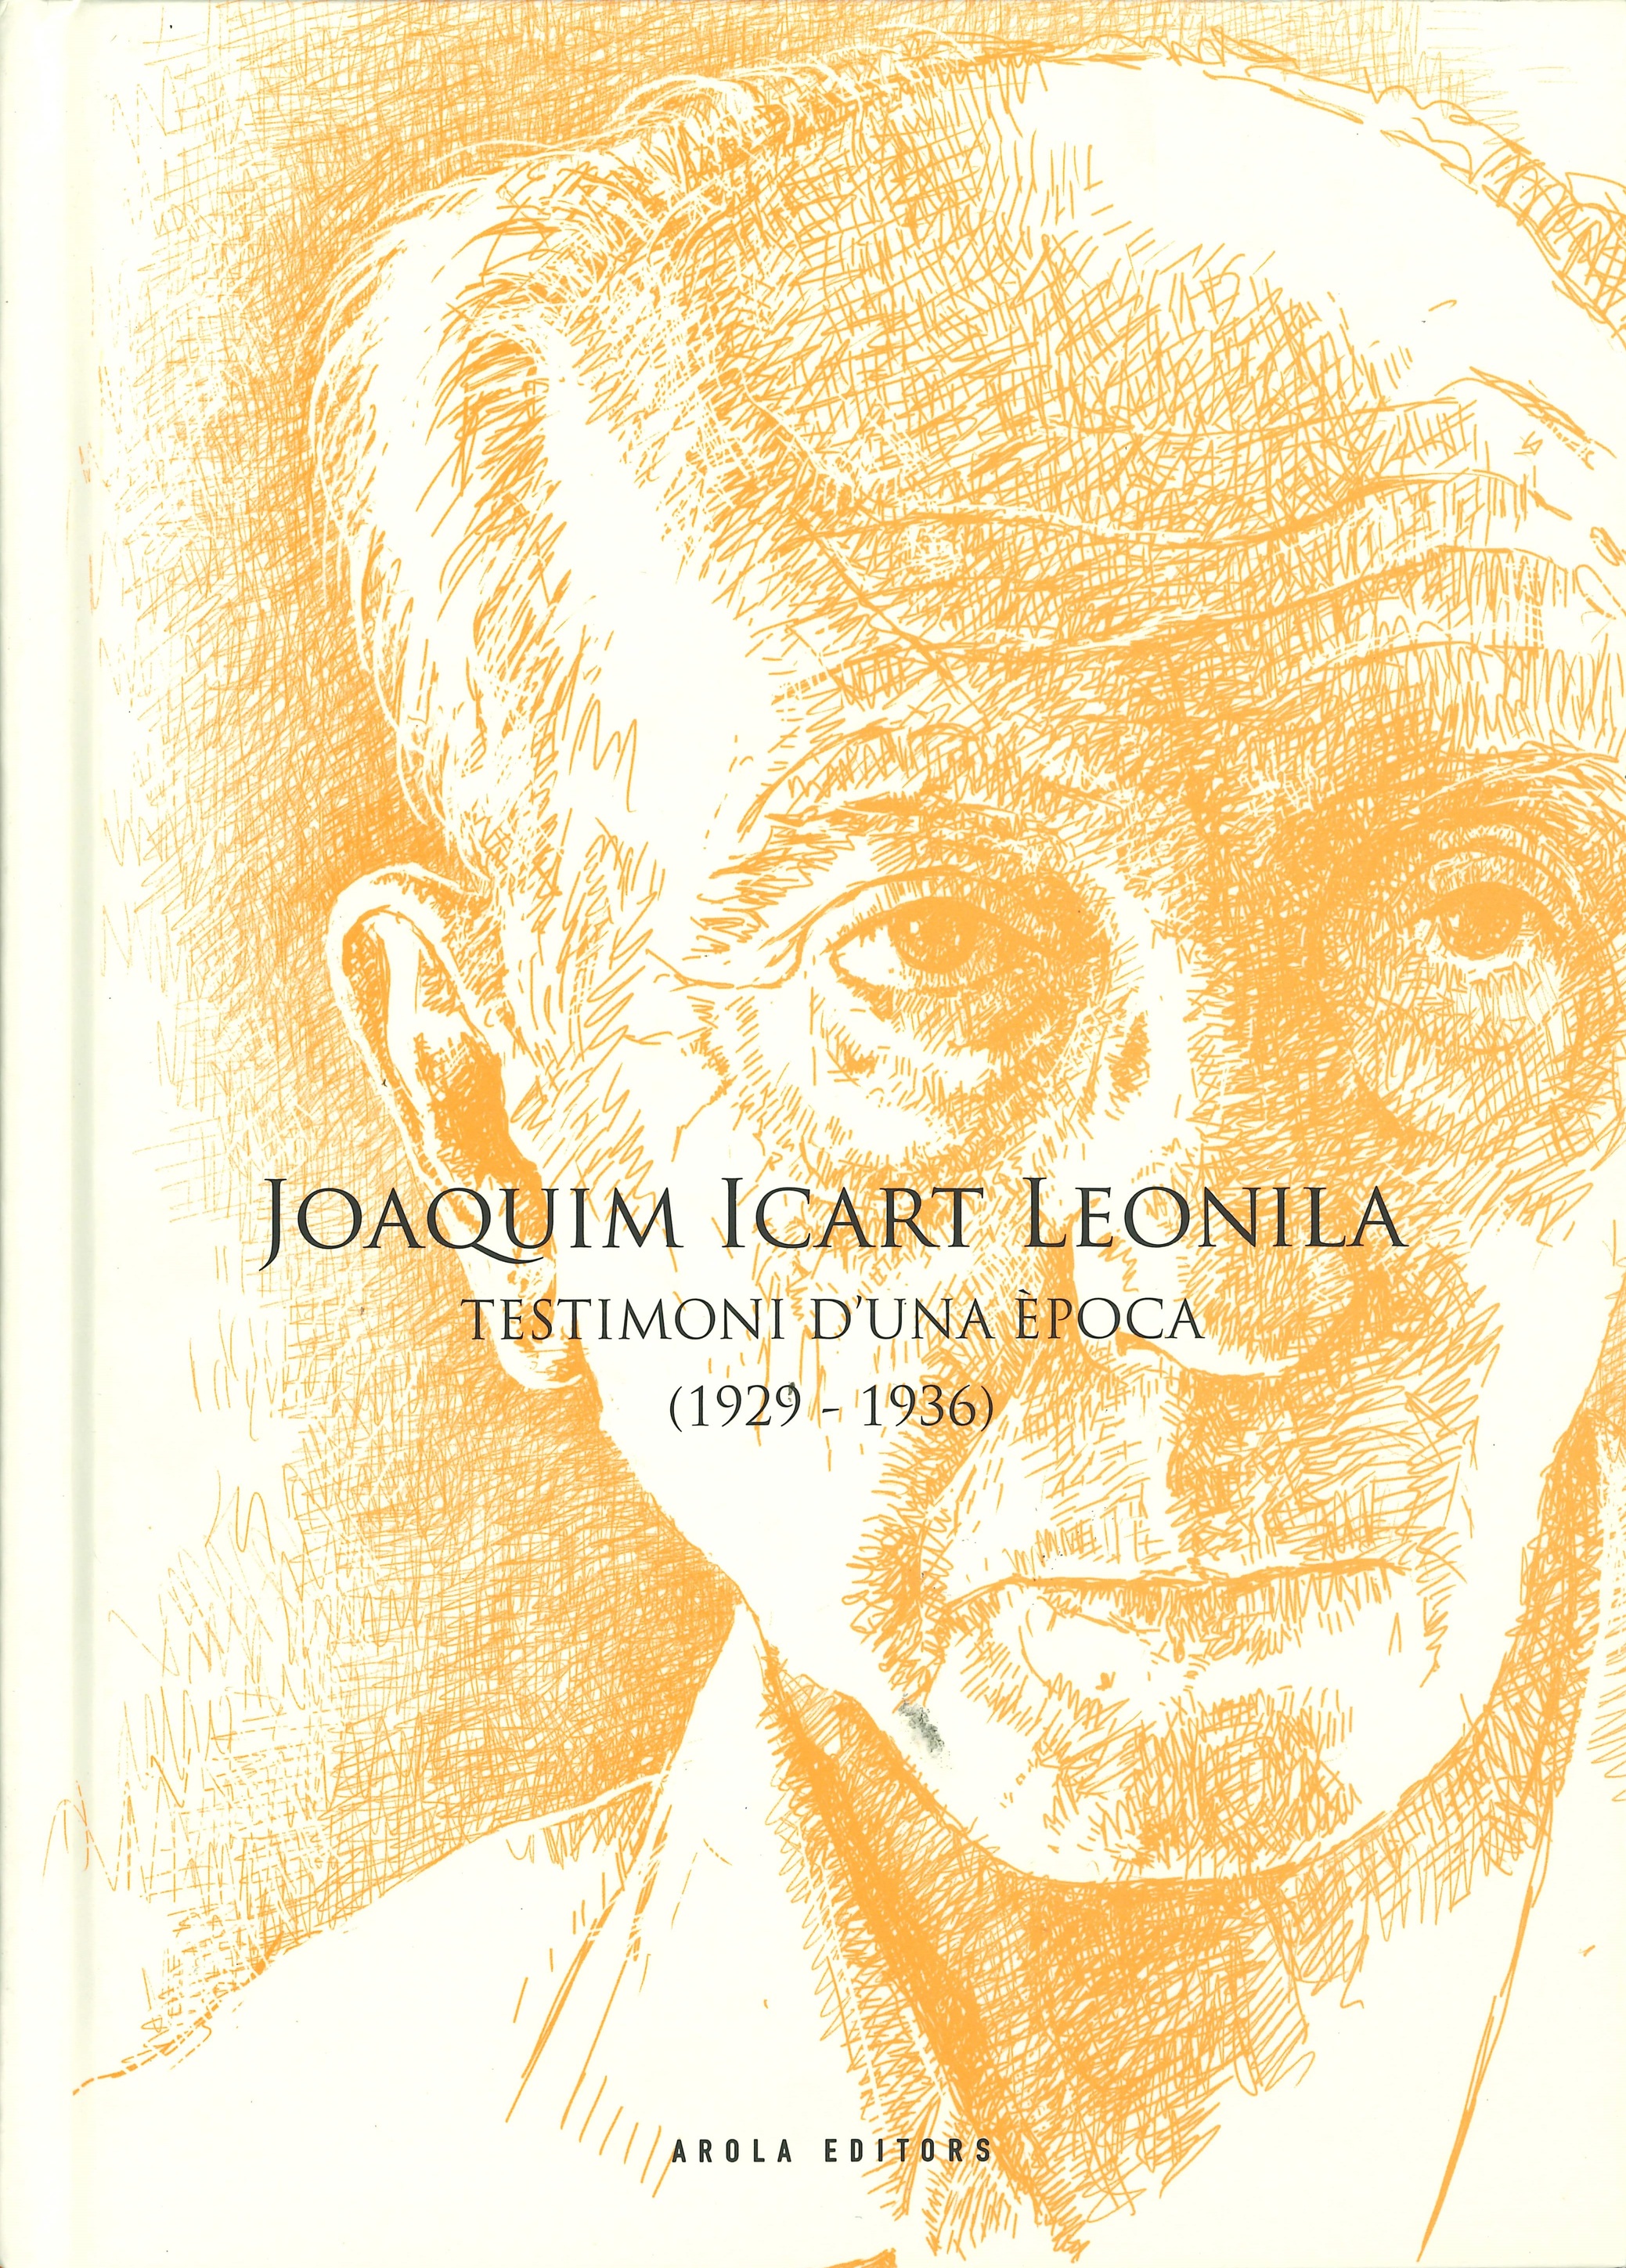 Imagen de portada del libro Joaquim Icart Leonila, testimoni d'una època (1929-1936)